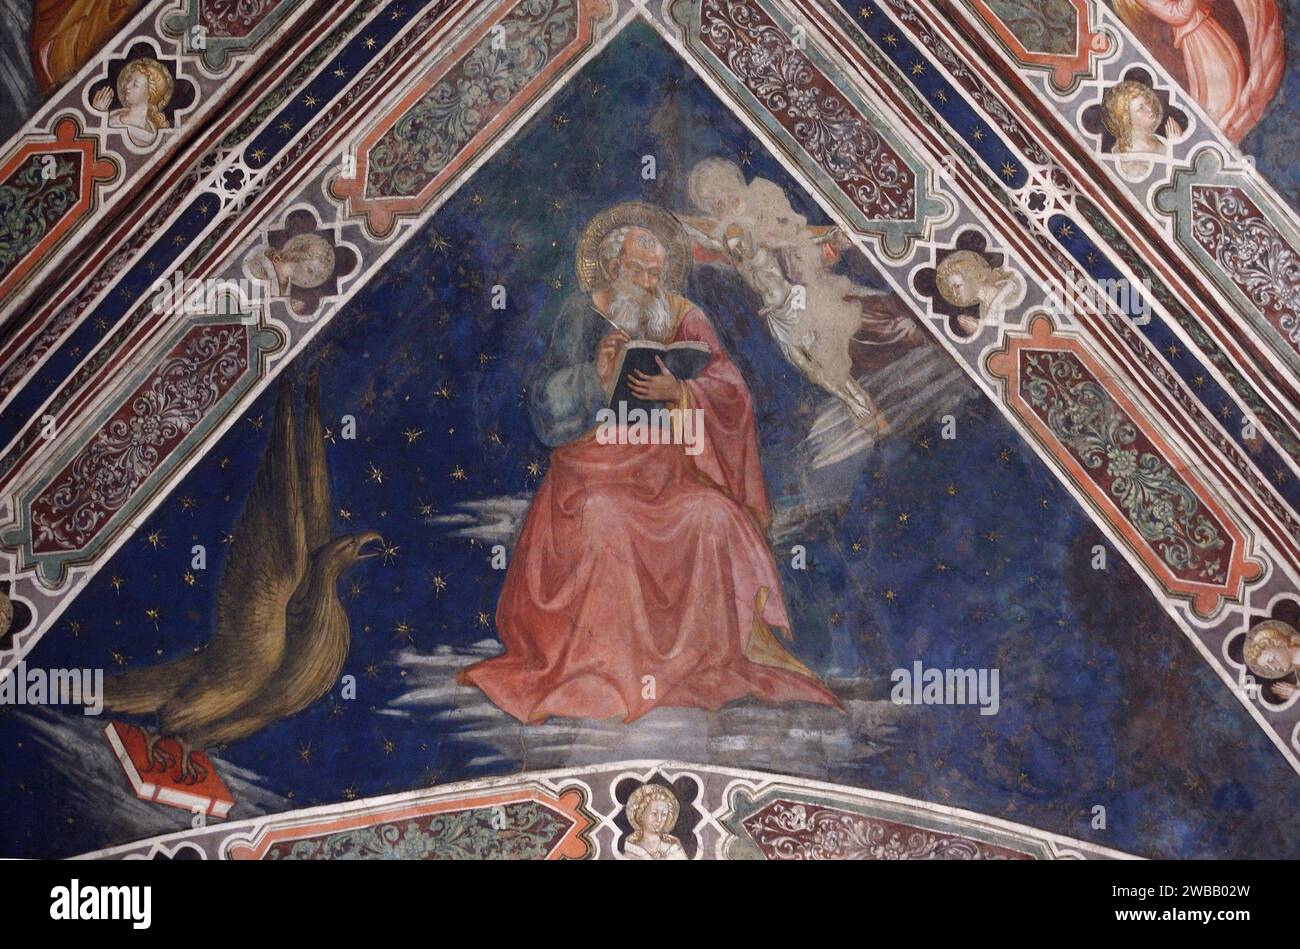 Italien Toskana Arezzo: Kirche San Francesco: Details des Freskos von Piero della Francesca über die Geschichte des wahren Kreuzes - Heiliger Johannes der Evangelist Stockfoto